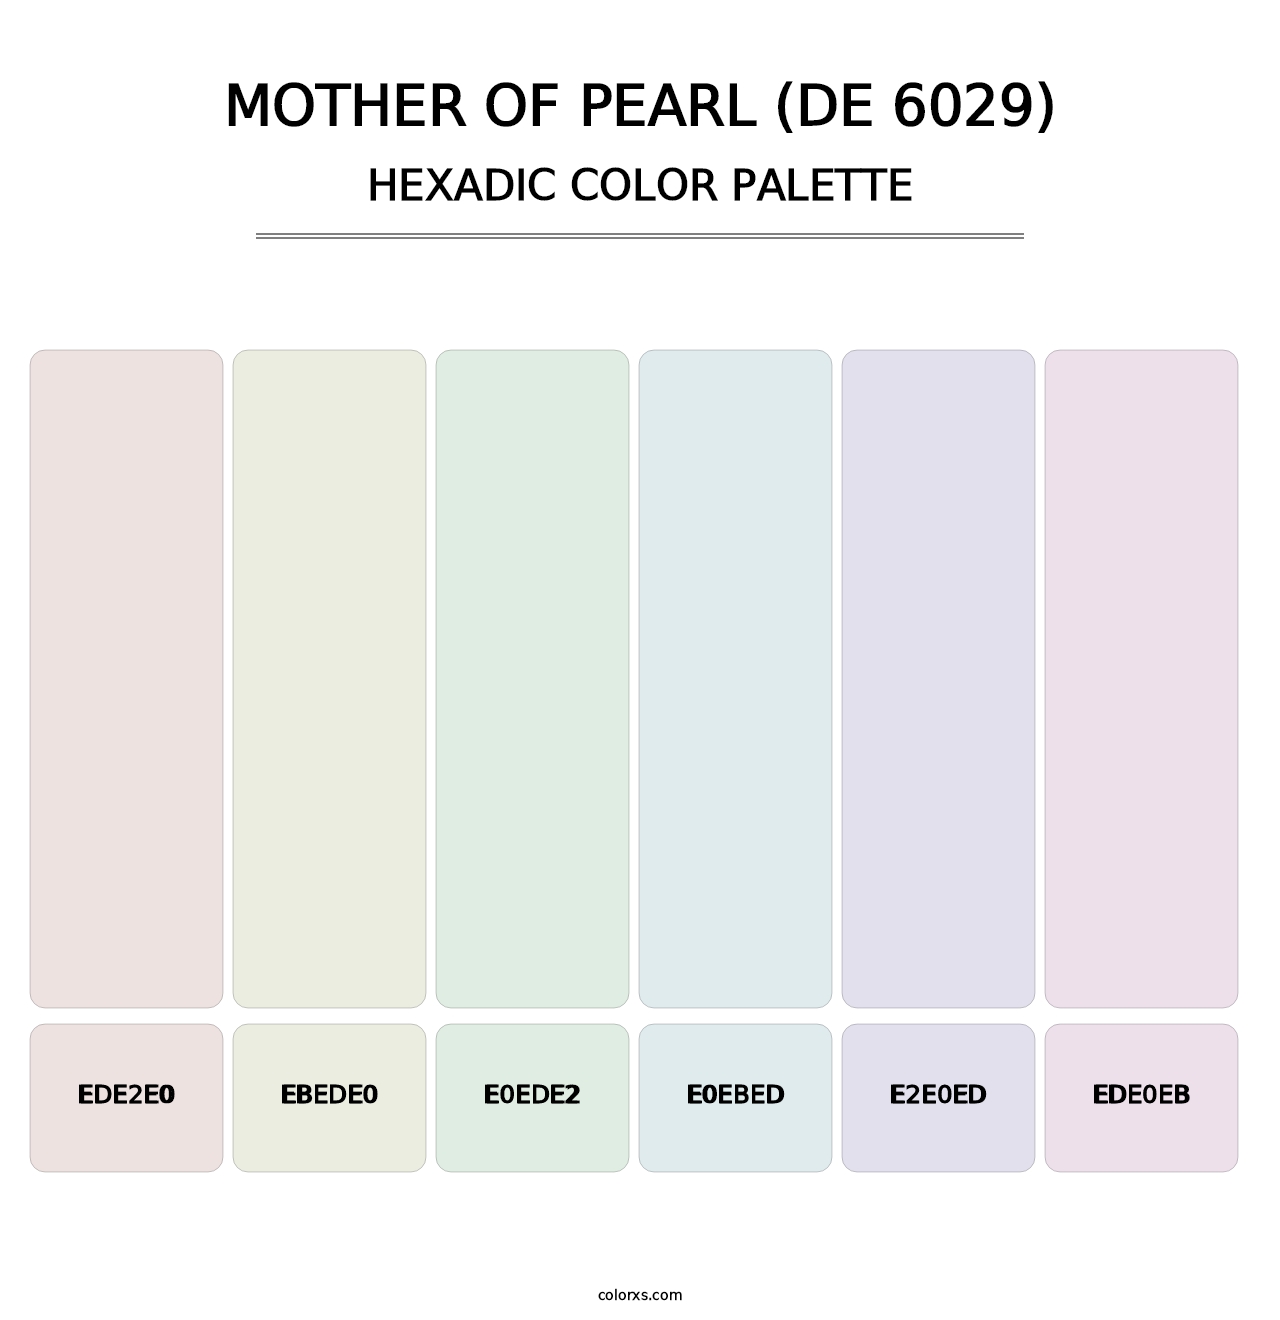 Mother of Pearl (DE 6029) - Hexadic Color Palette